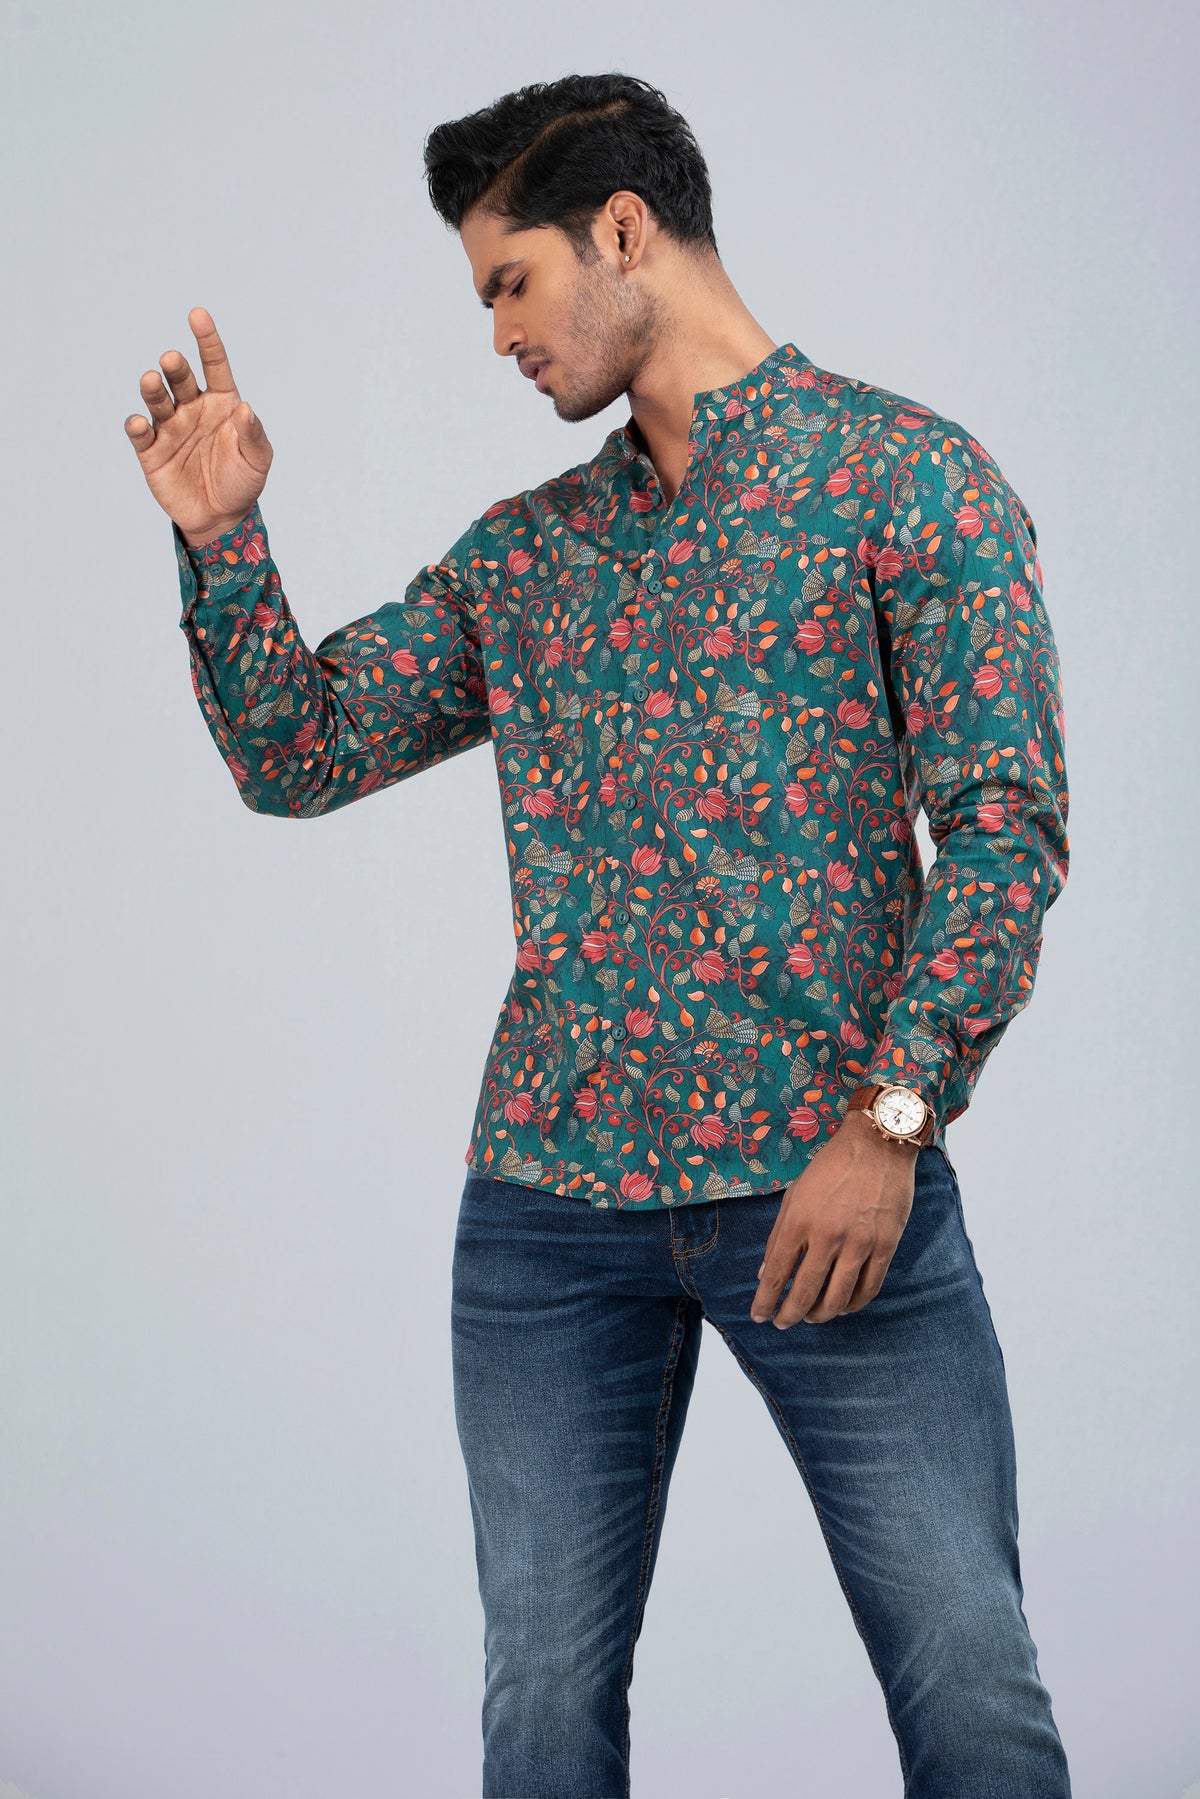 Men's Digital Printed Casual Shirt